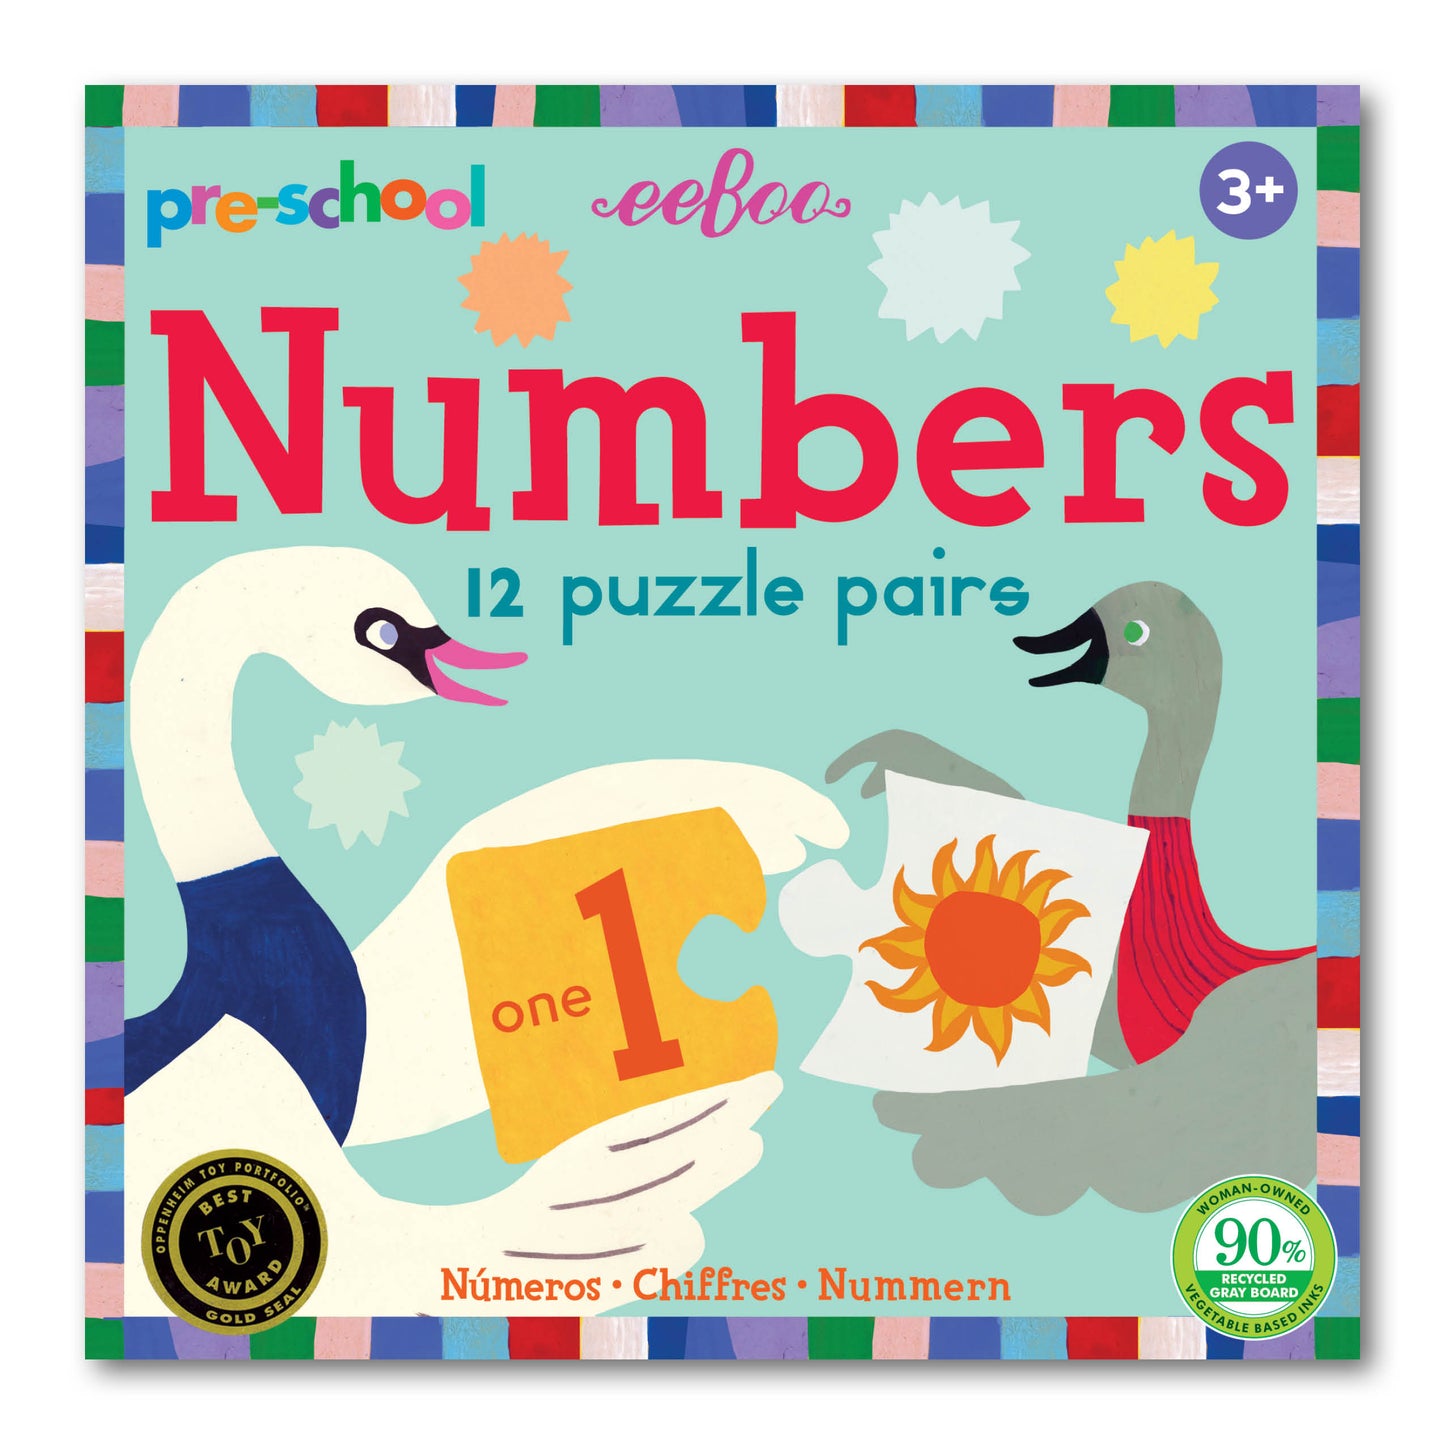 Preschool Numbers Puzzle Pairs